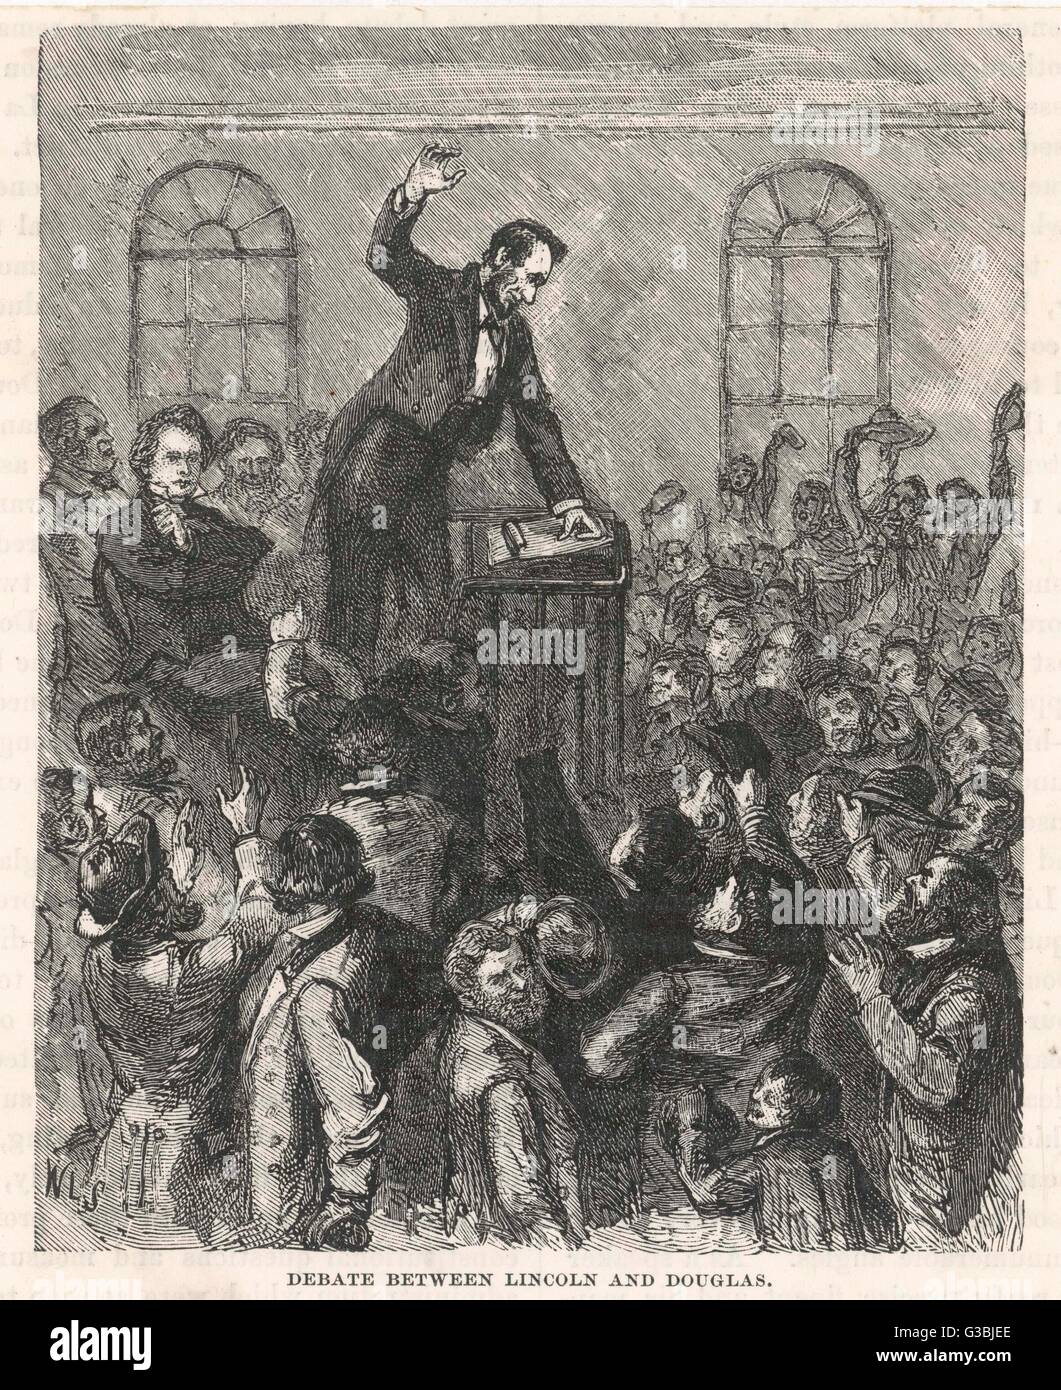 Eine Reihe von Debatten, die stattfand zwischen Stephen Douglas und Abraham Lincoln.Douglas unterstützt den Kansas-Nebraska Act, während Lincoln dagegen.      Datum: 1858 Stockfoto